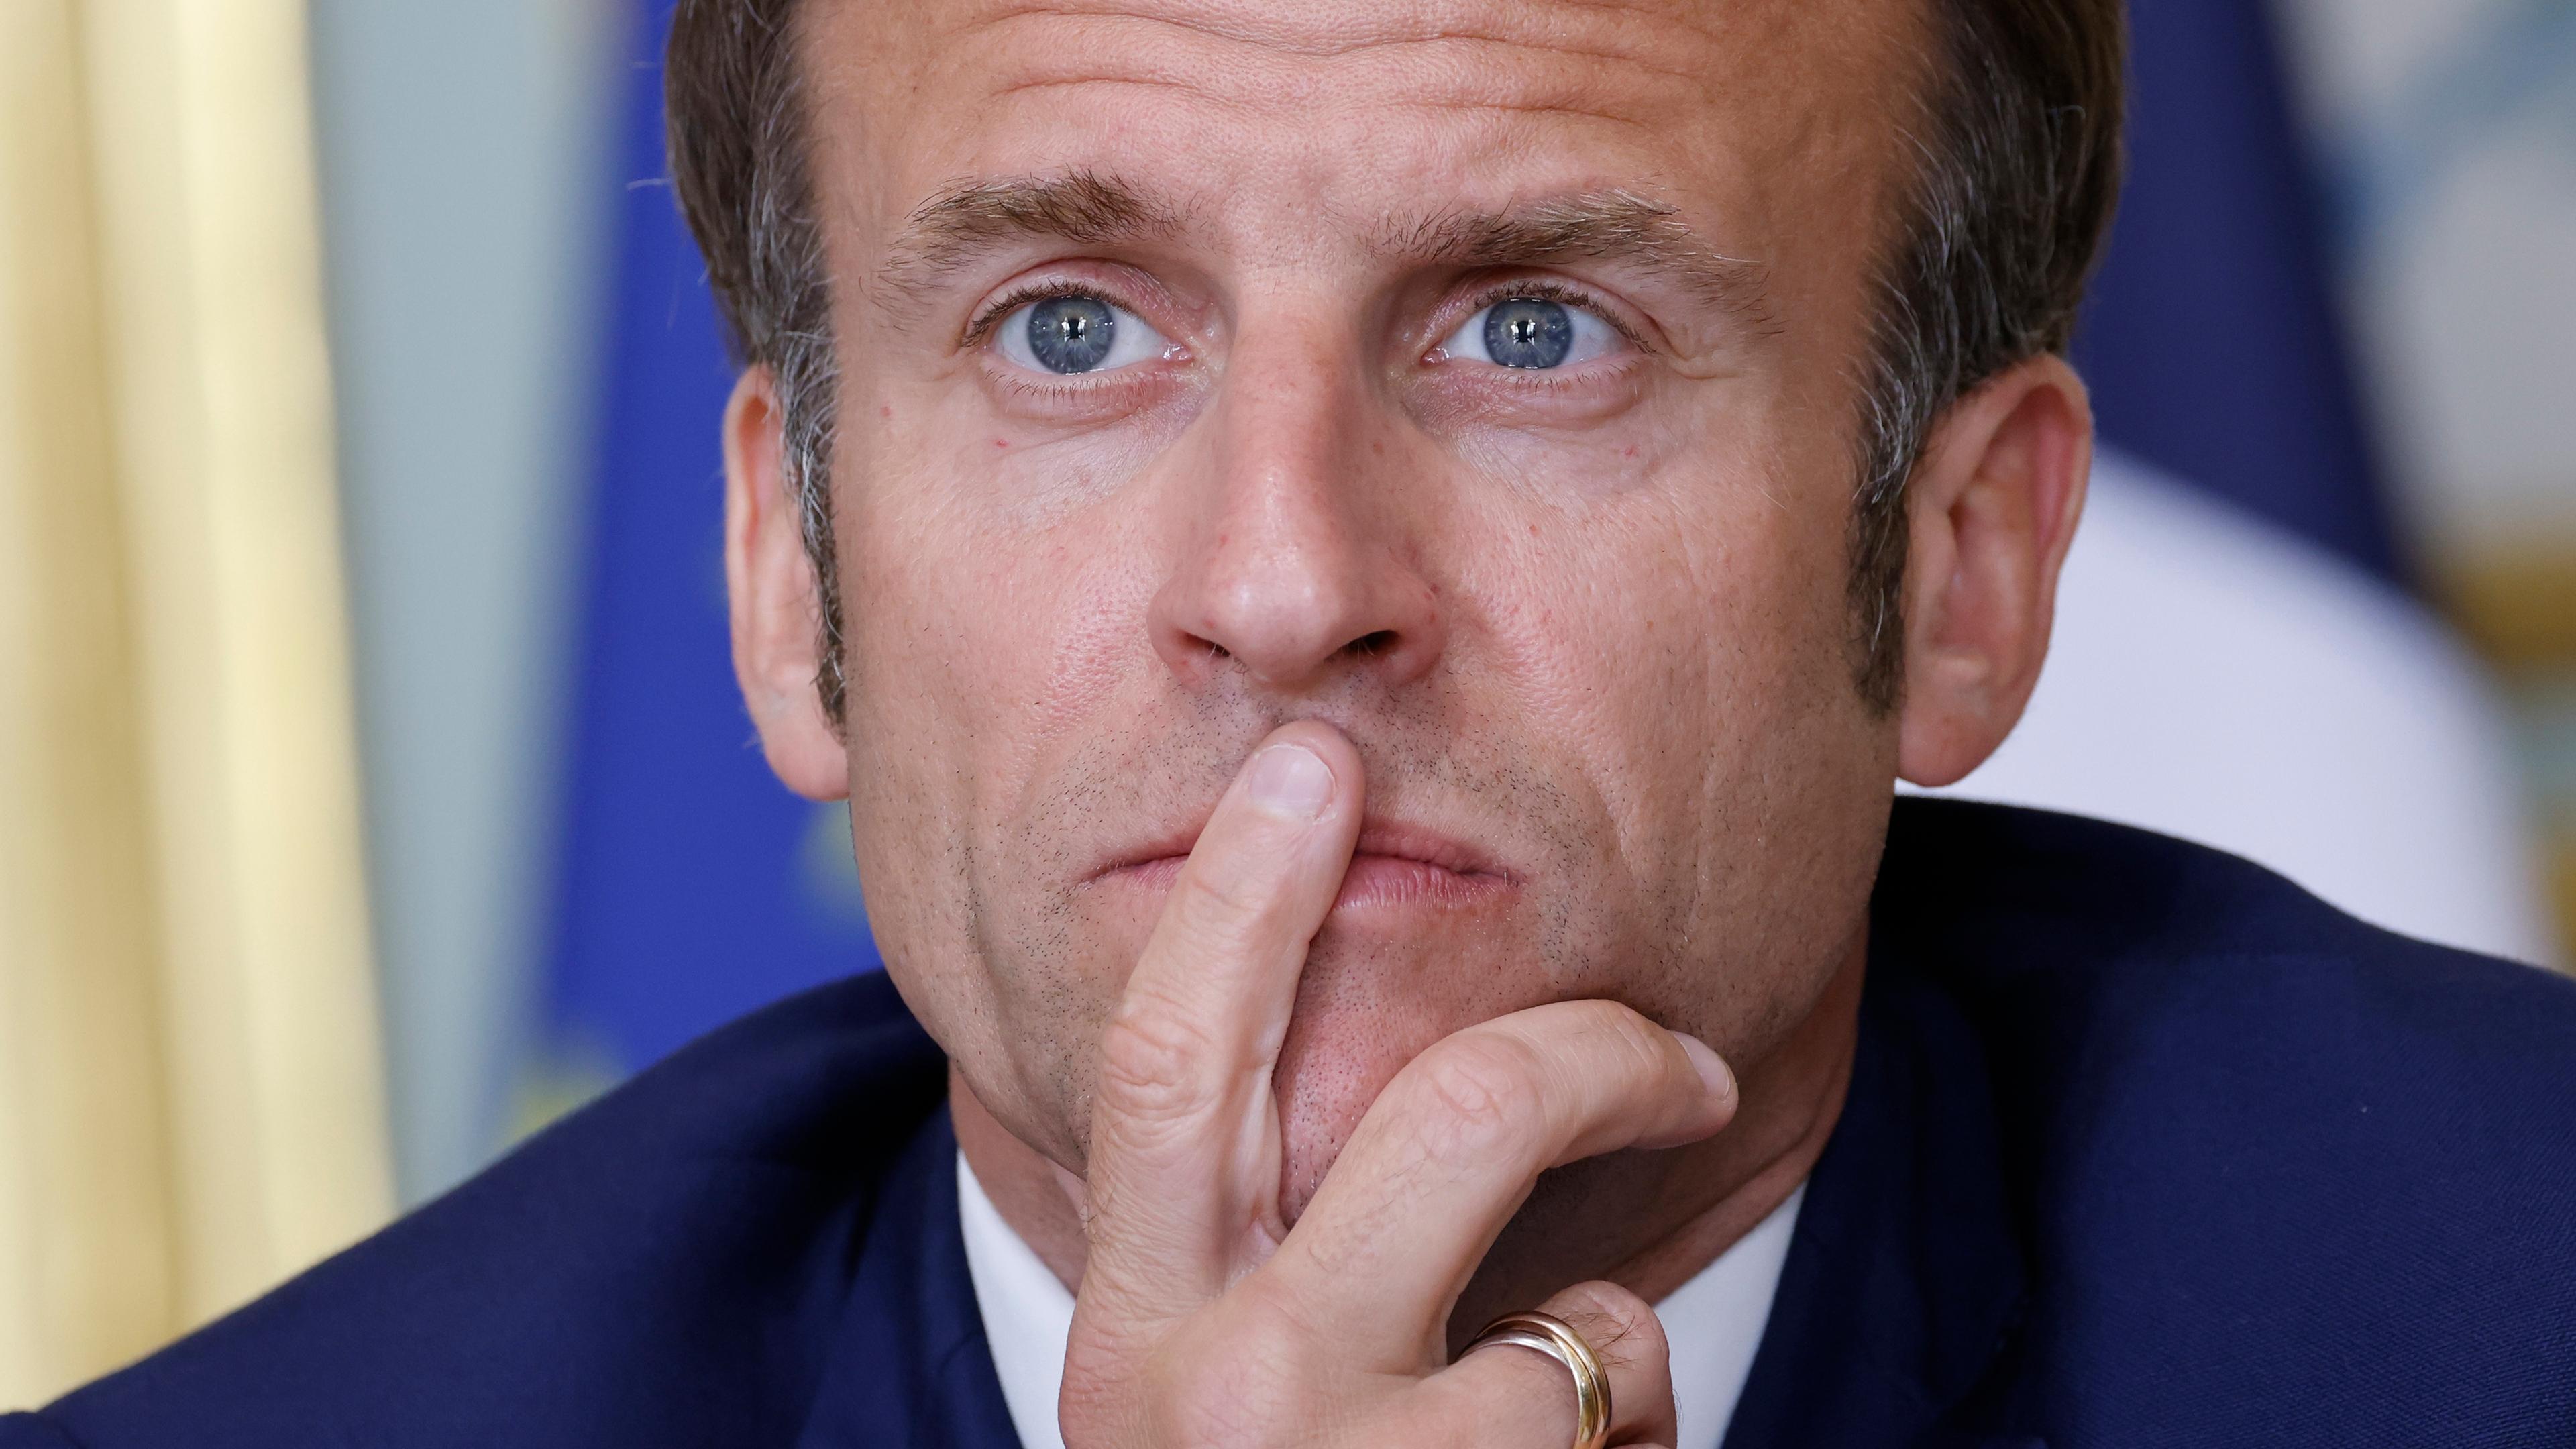 Frankreich, Paris: Emmanuel Macron, Präsident von Frankreich, nimmt im Elysee-Palast an einer Videokonferenz teil.